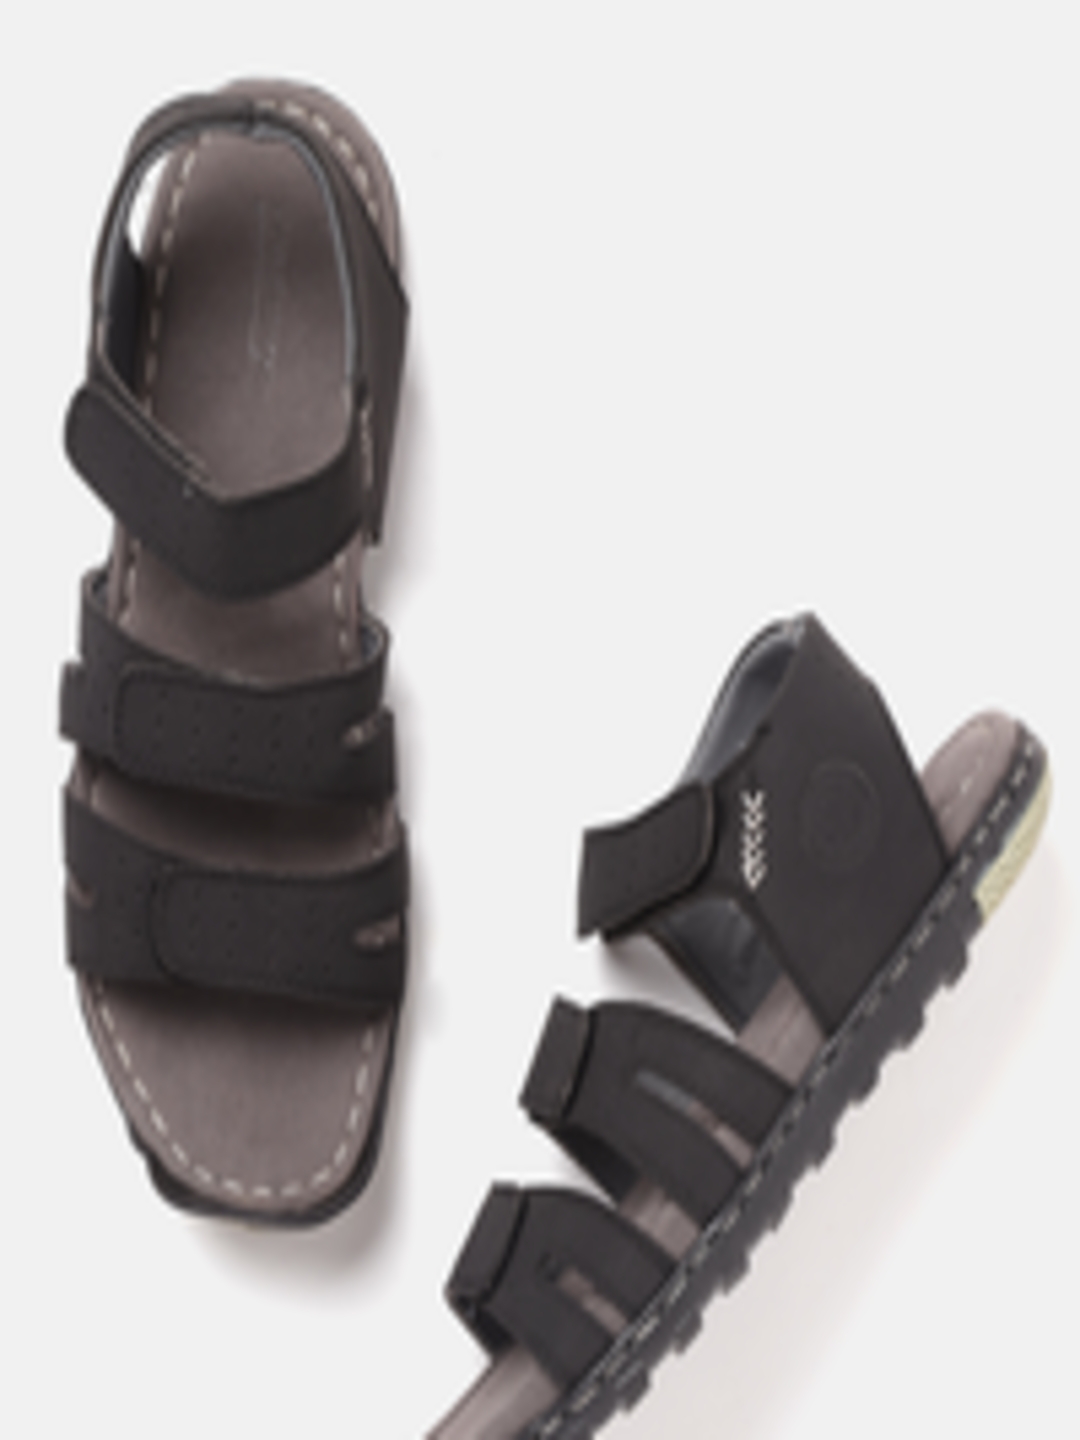 Buy Roadster Men Black Solid Leather Comfort Sandals - Sandals for Men ...